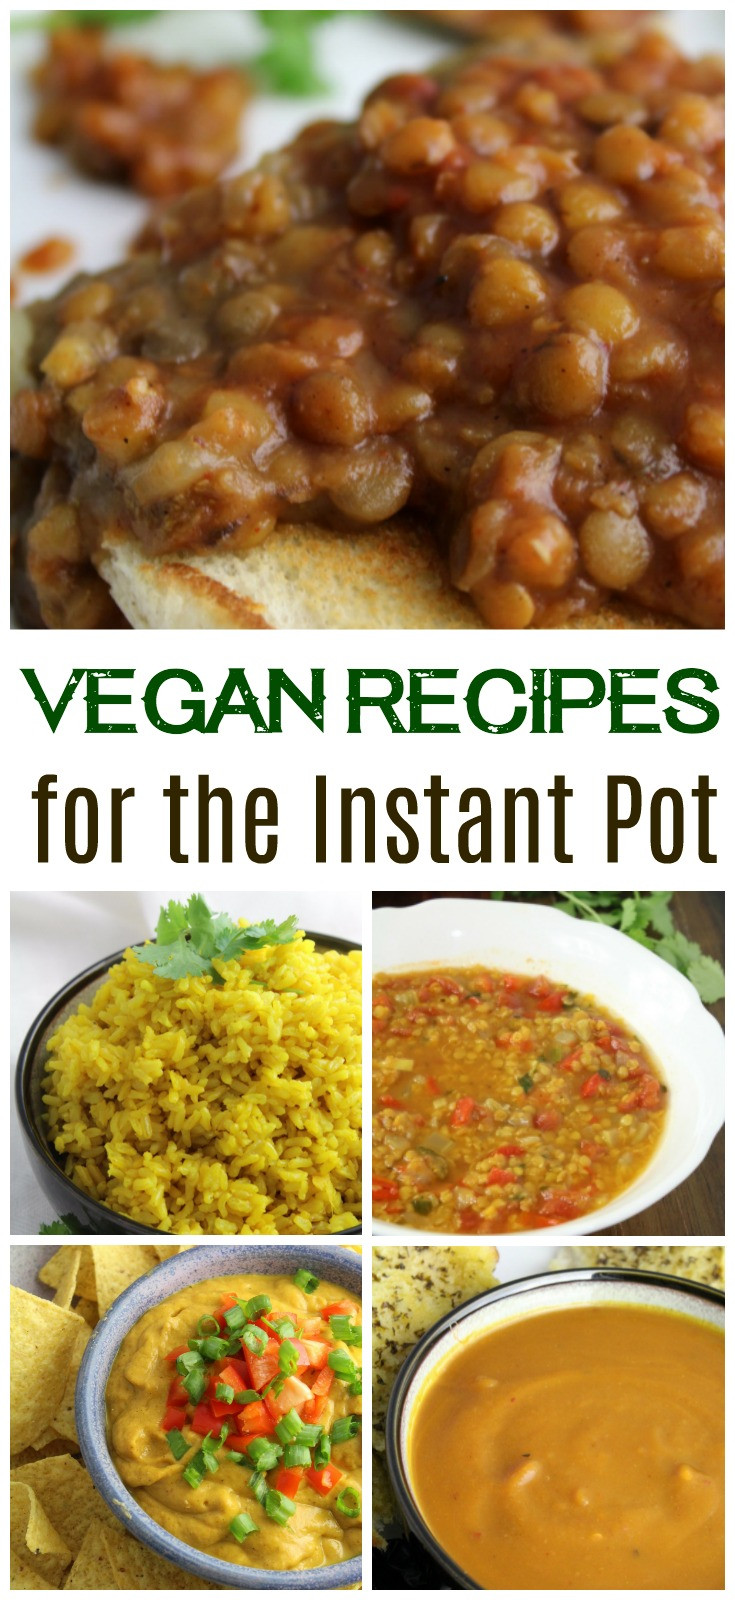 Vegan Instant Pot Recipes
 Vegan Recipes for the Instant Pot